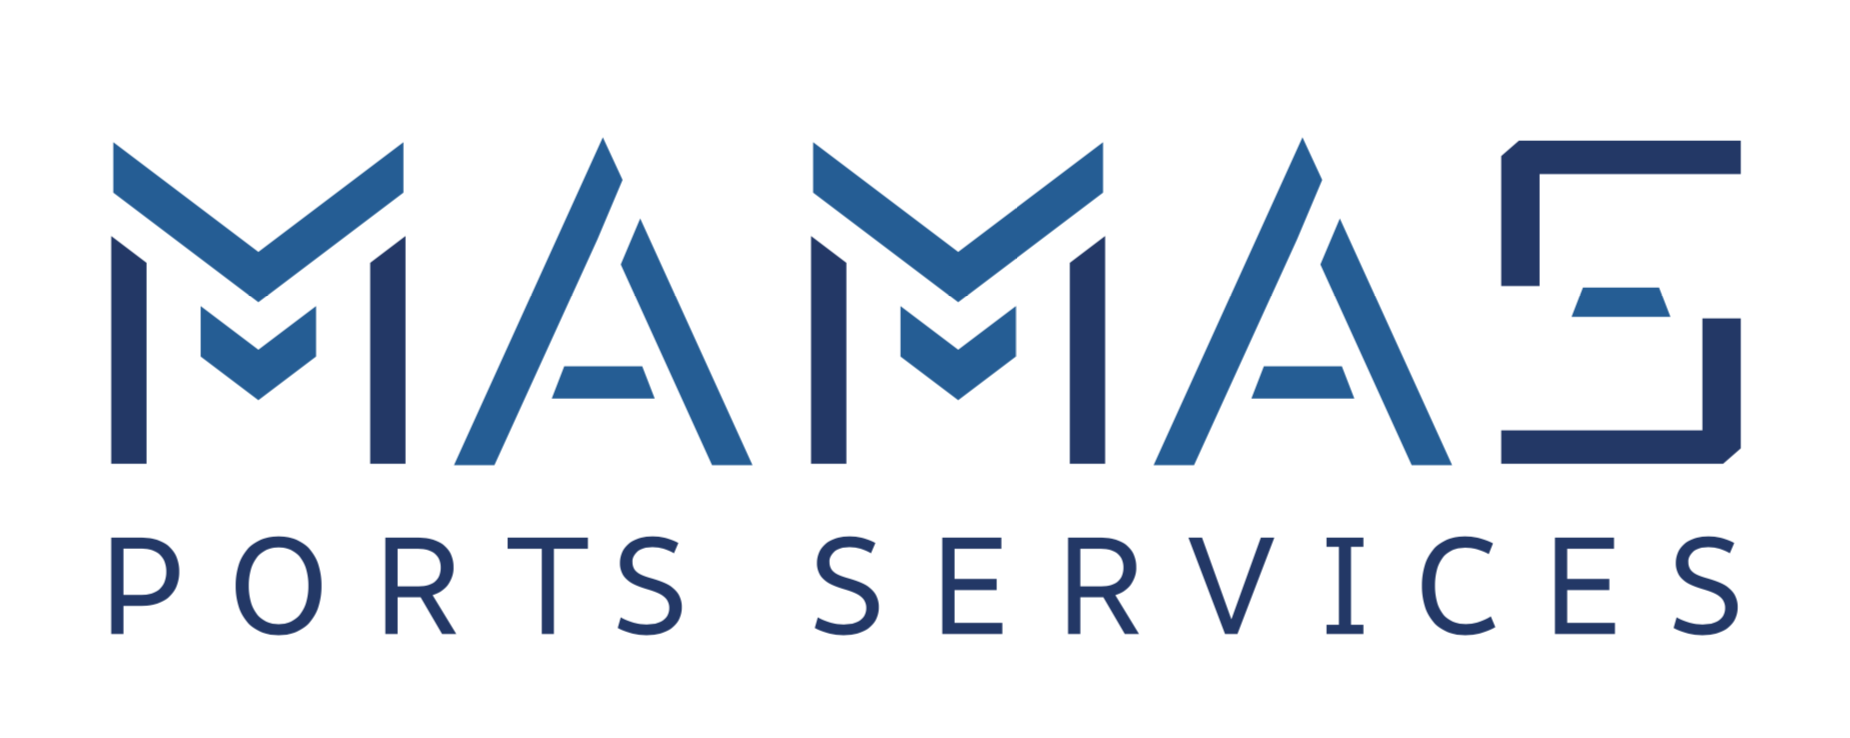 MAMAS Port Services Co. Ltd.